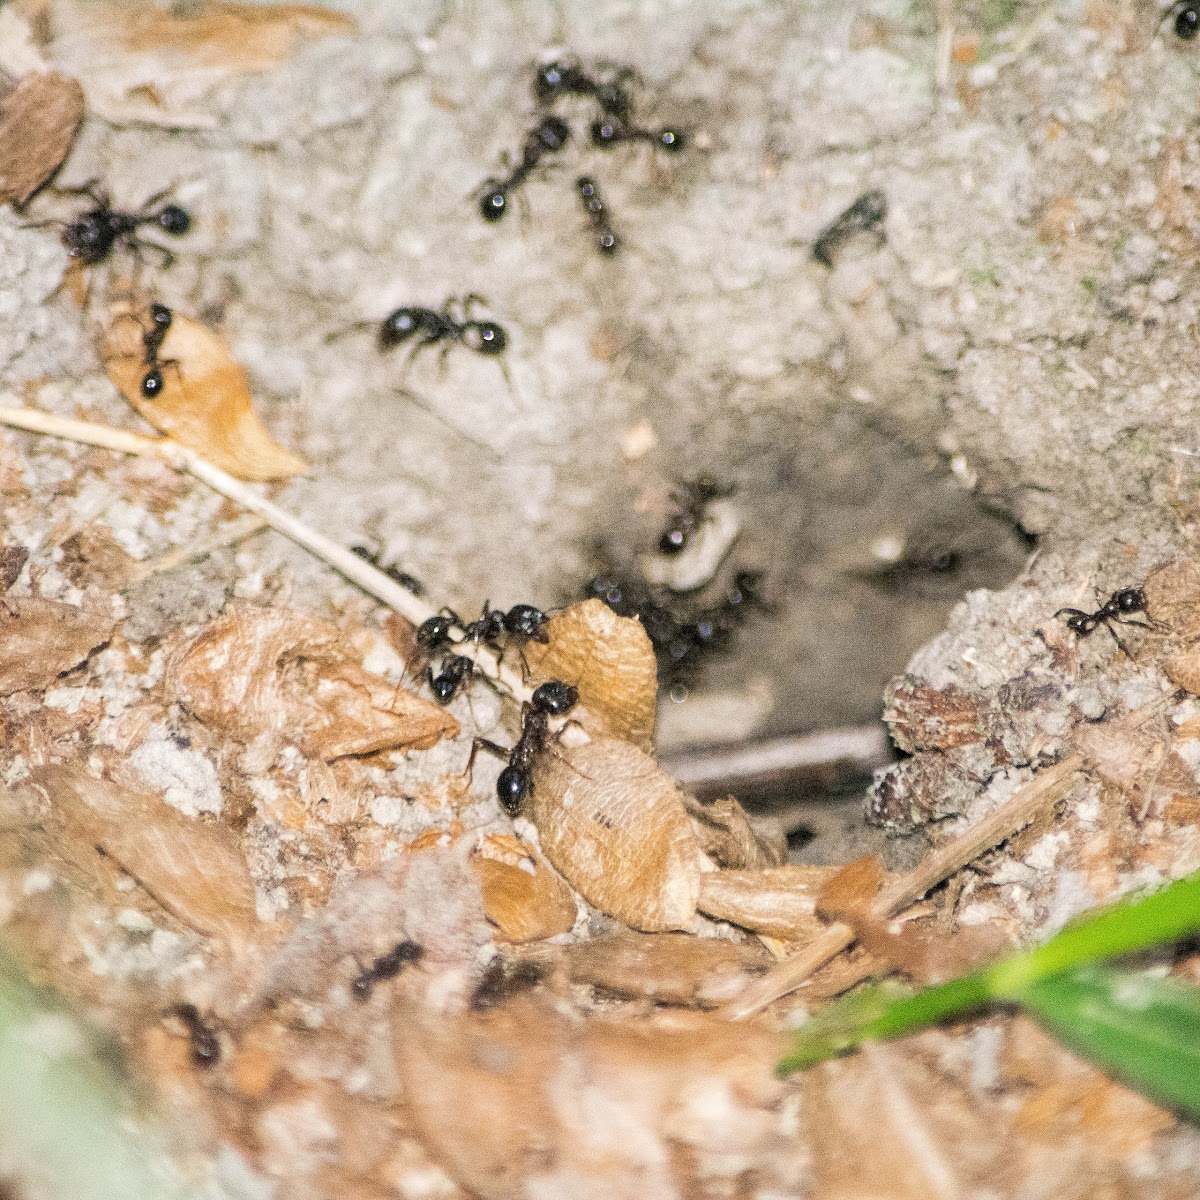 ants nest